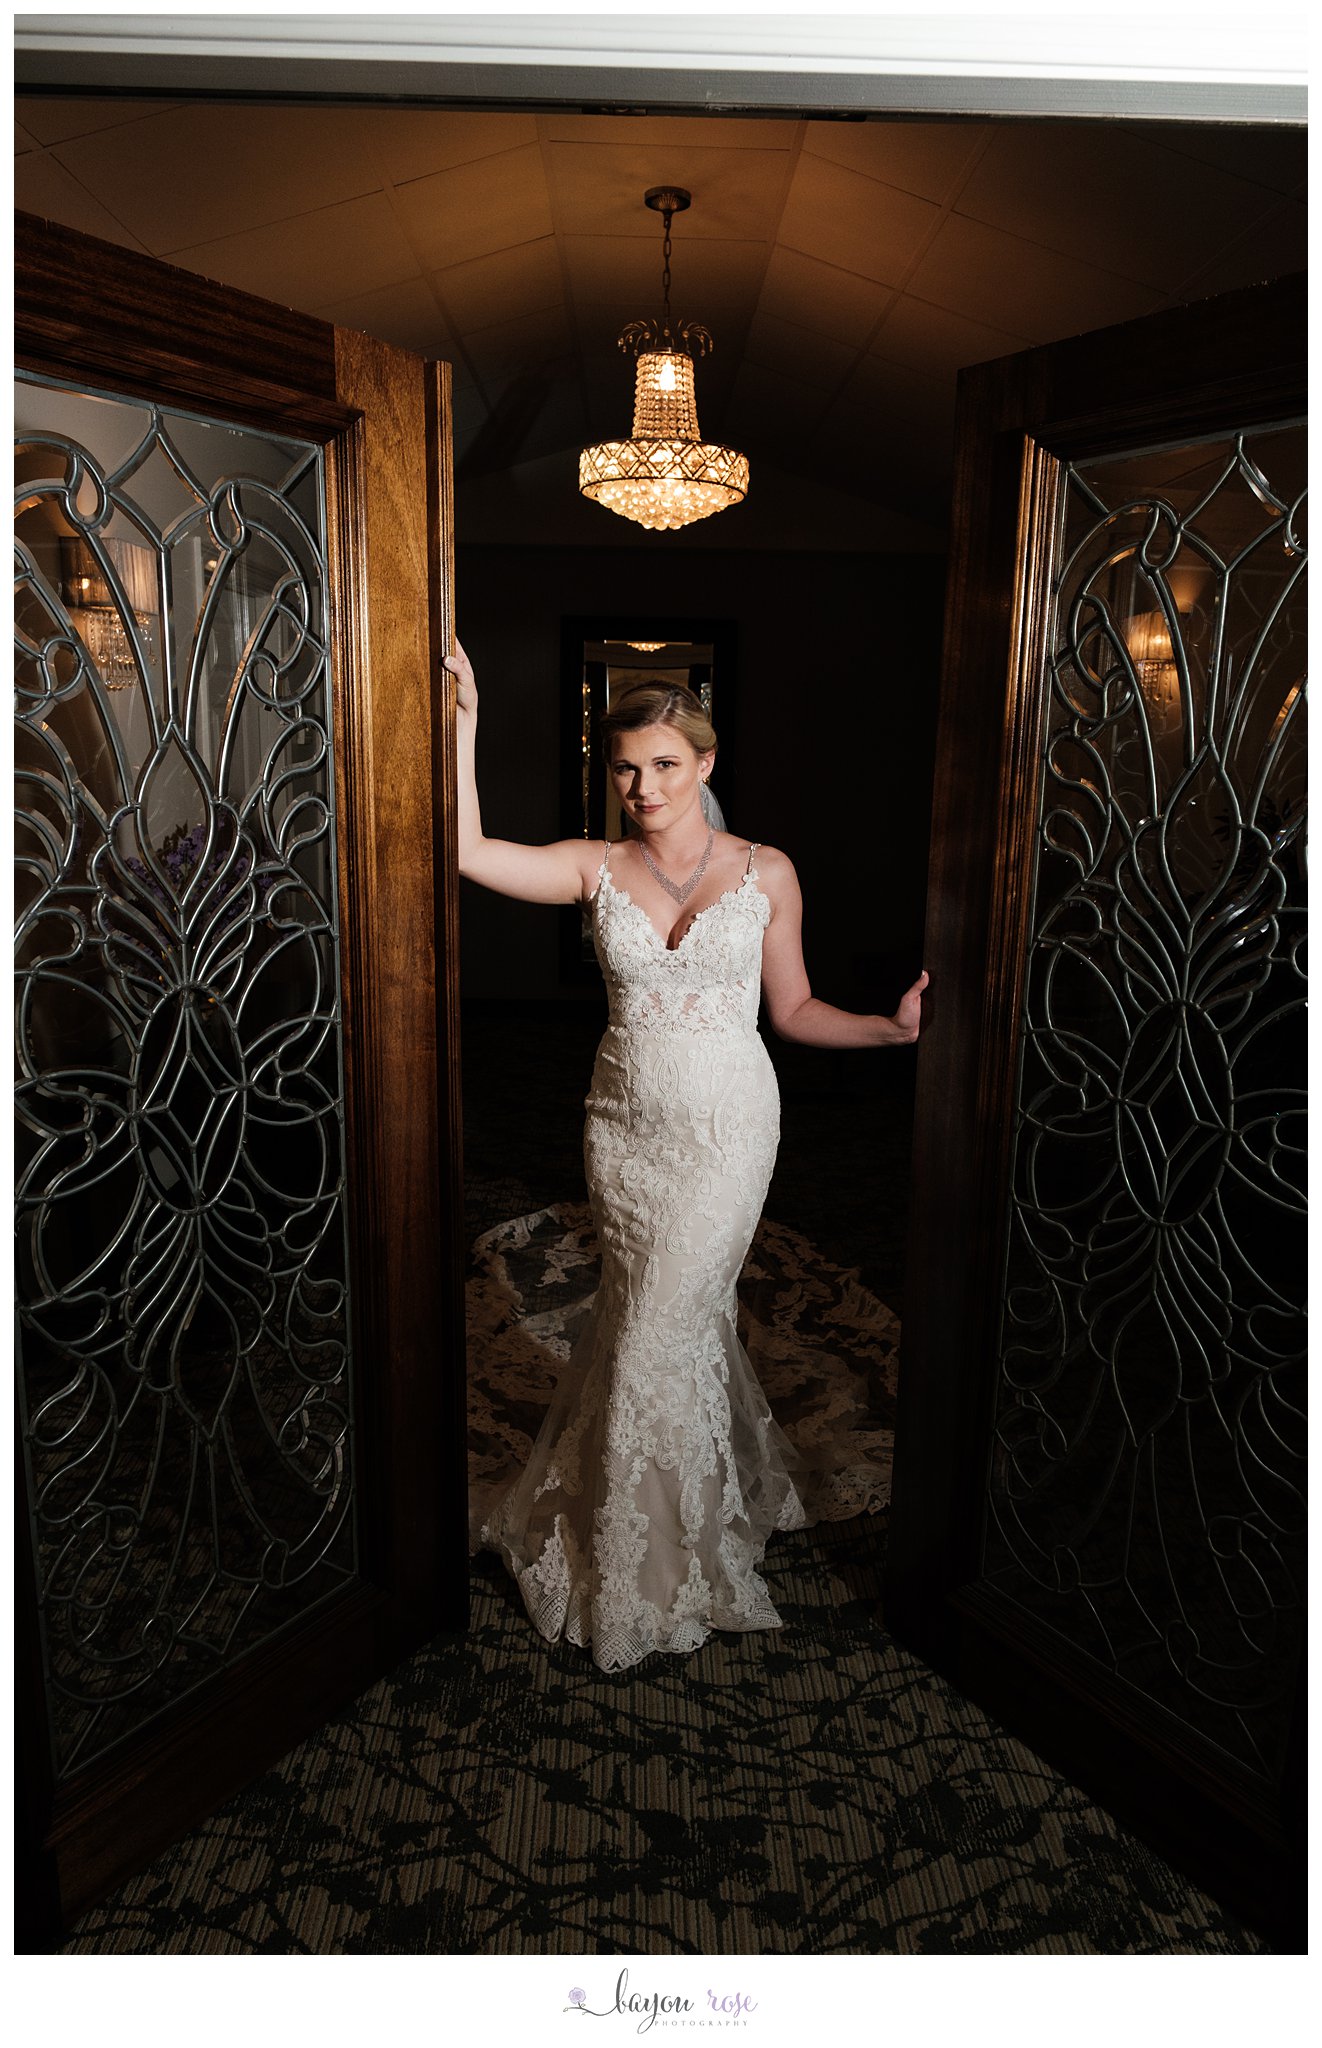 Bride under chandelier in doorway